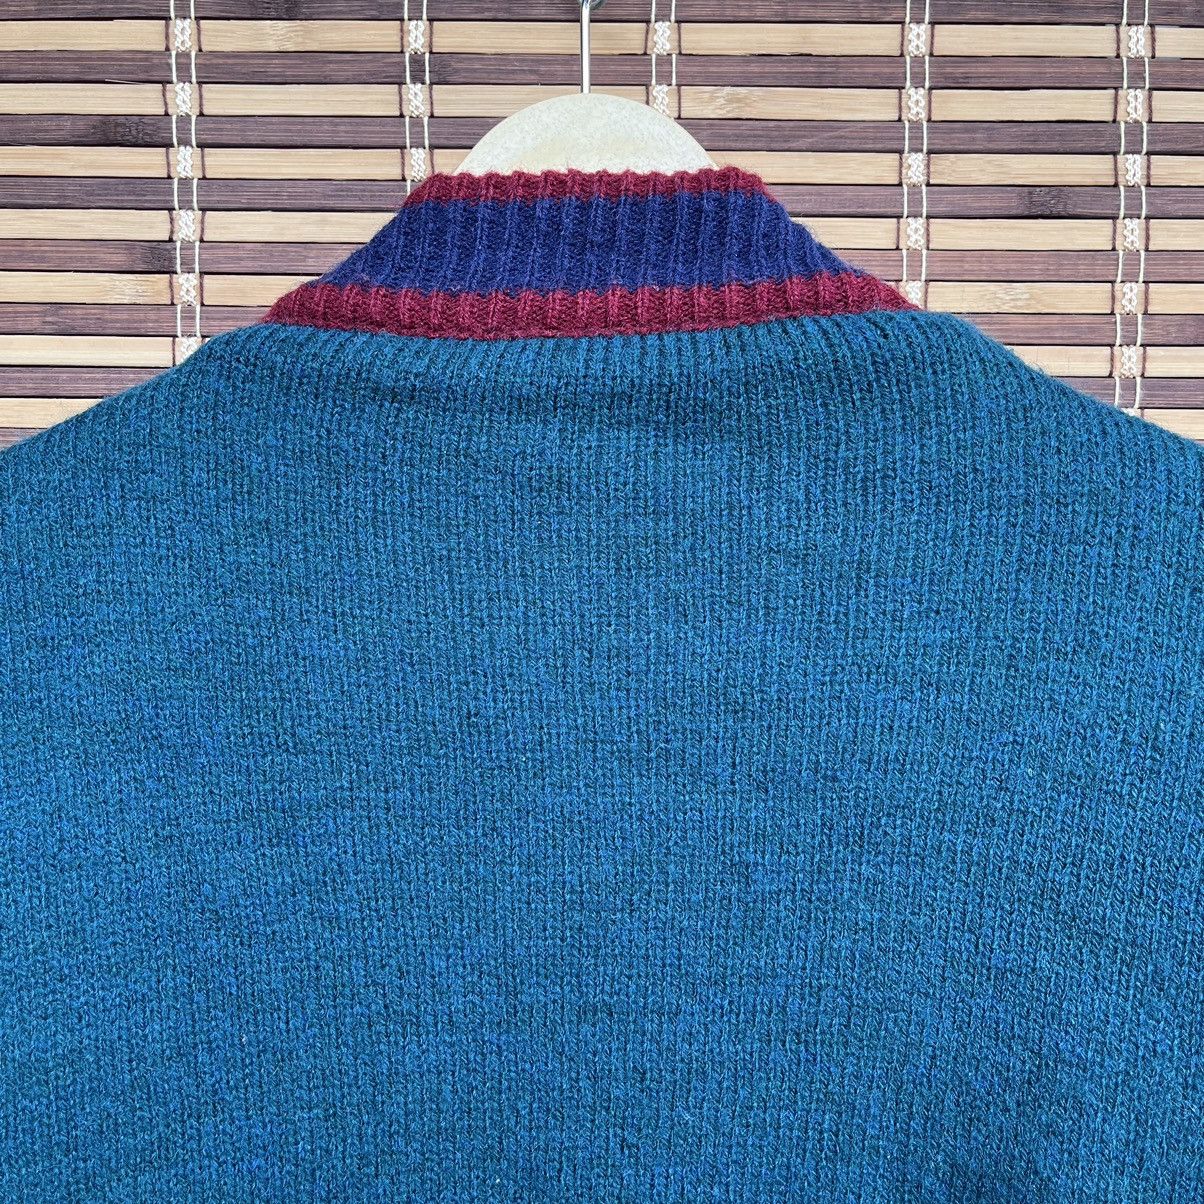 Vintage - Grails Wool Knitwear Sweater American Champ 1957 - 19